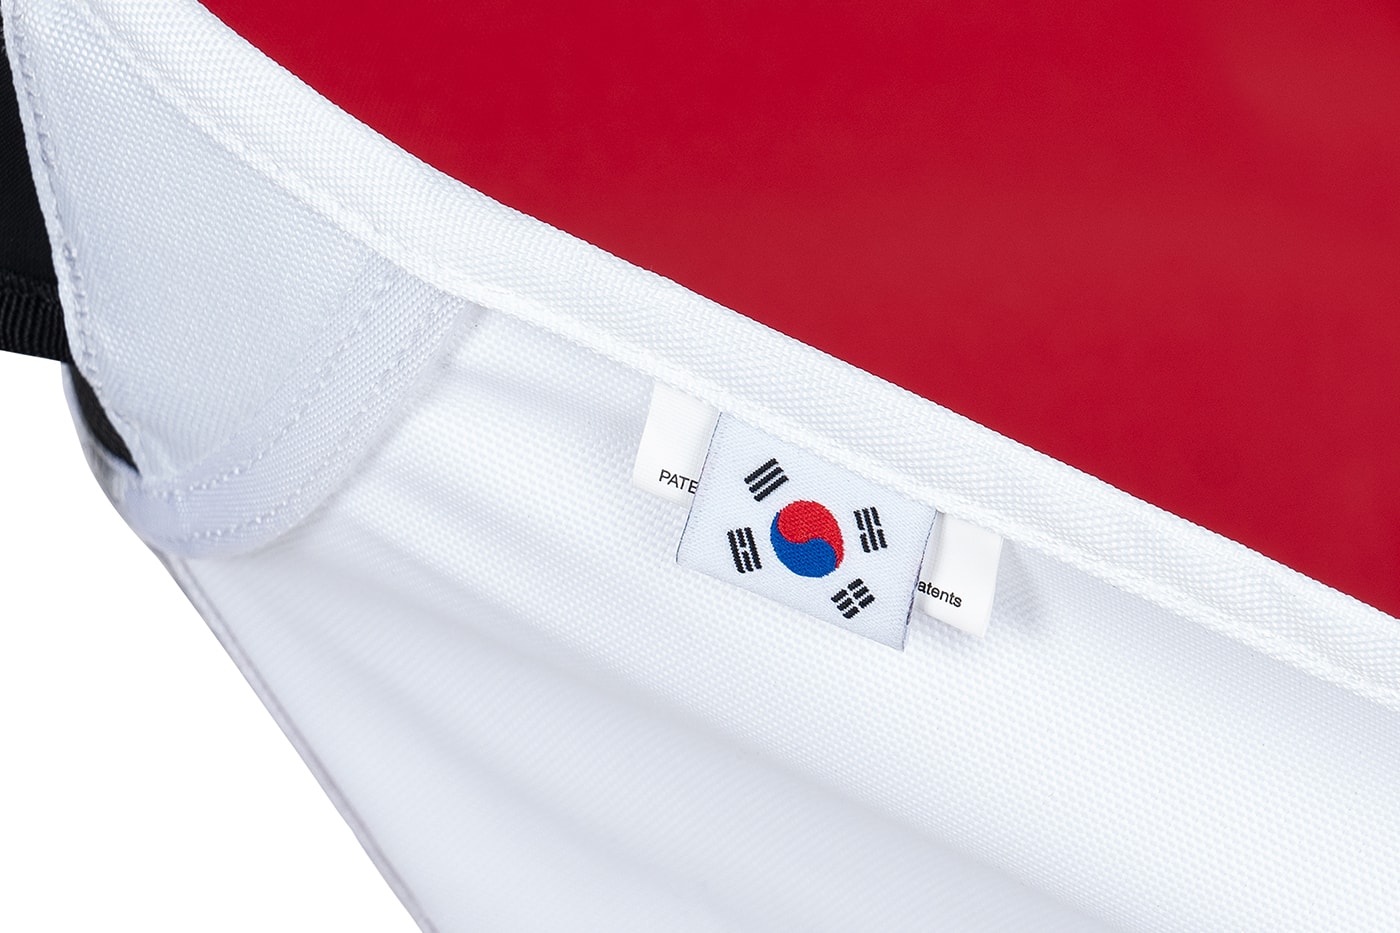 조던 브랜드 x 헬리녹스 체어 원 출시, 의자, 캠핑용품, 에어 조던, 조던 서울